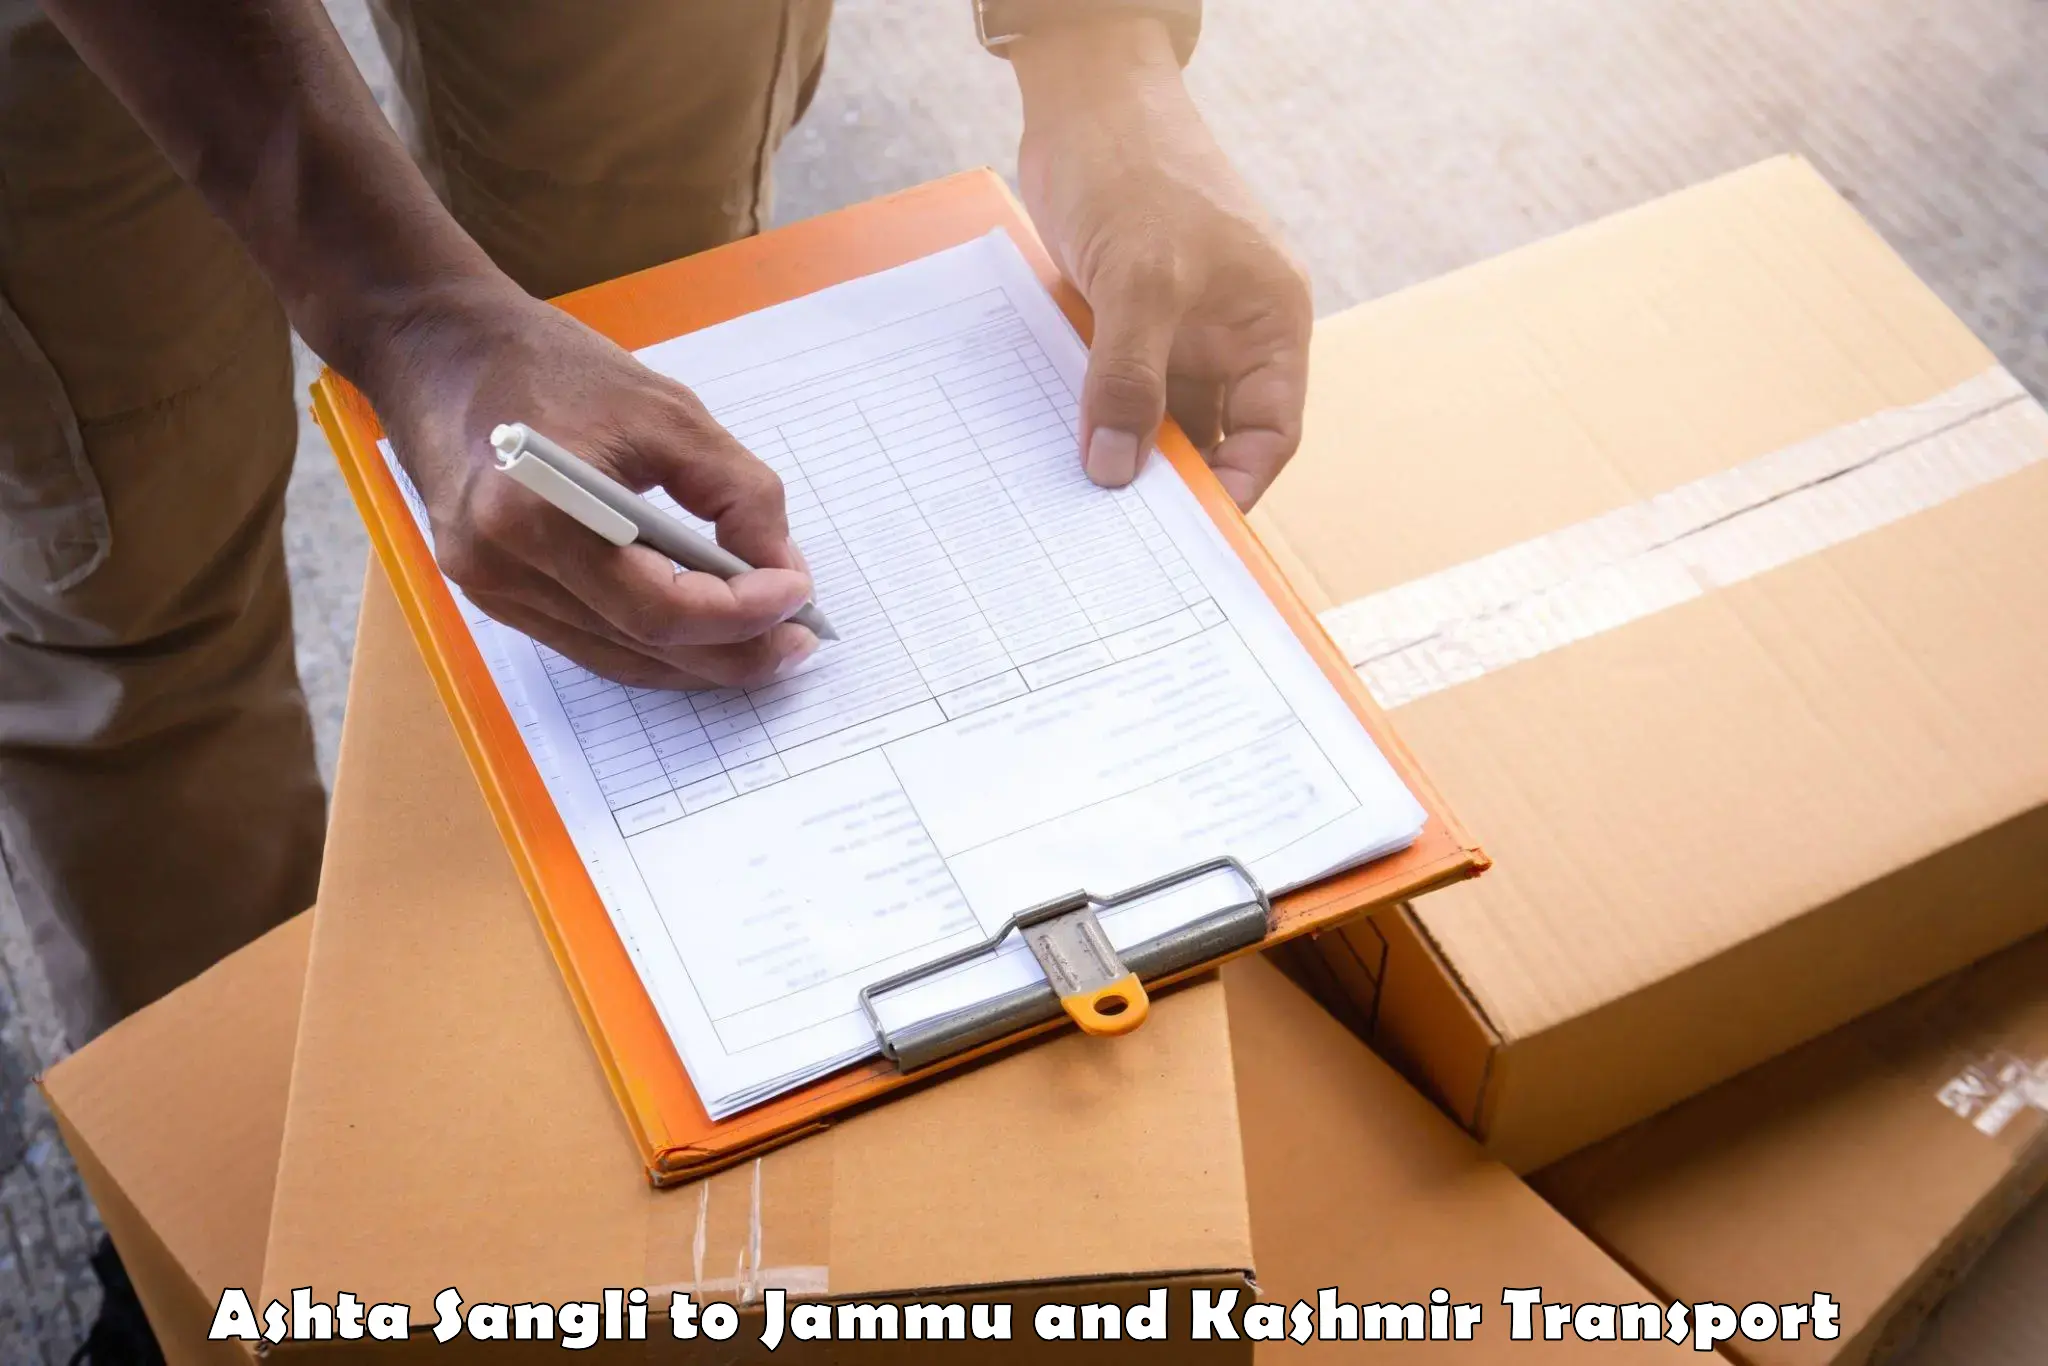 Furniture transport service in Ashta Sangli to Srinagar Kashmir